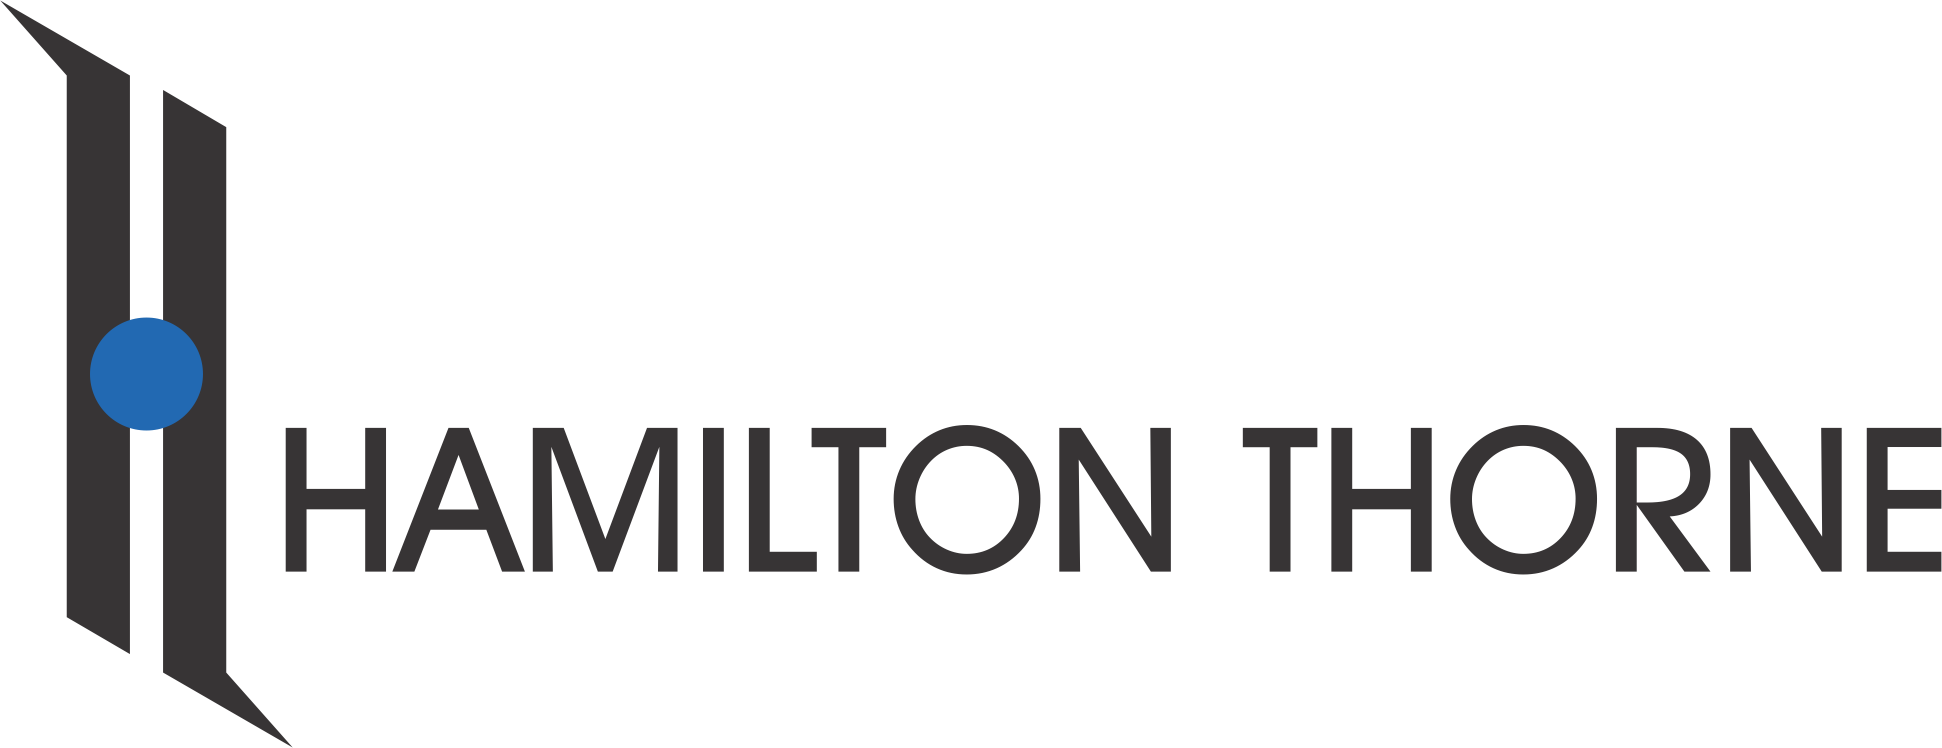 Hamilton Thorne Inc Main logo